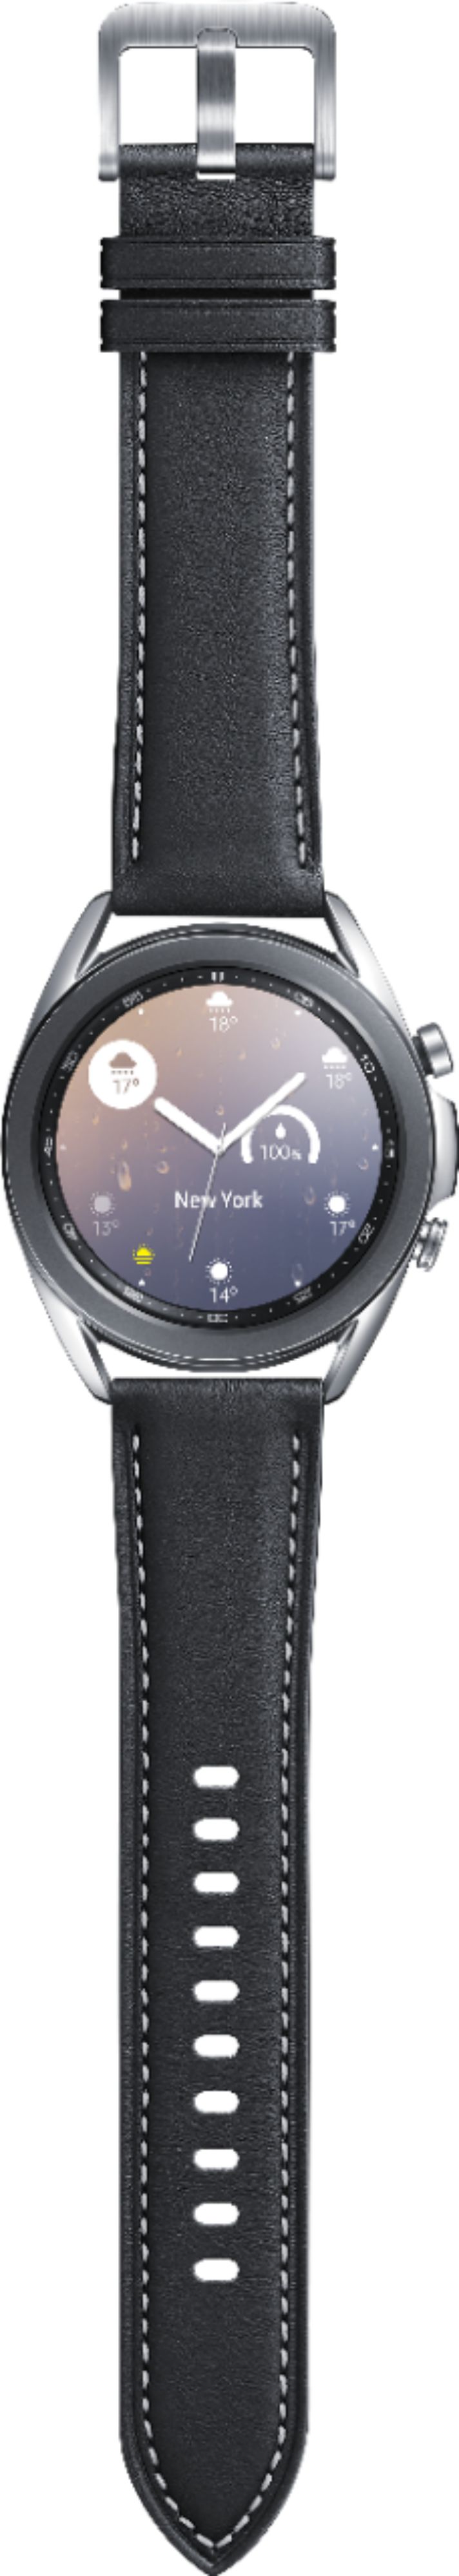 Best Buy Samsung Galaxy Watch3 Smartwatch 41mm Stainless Bt Mystic Silver Sm R850nzsaxar